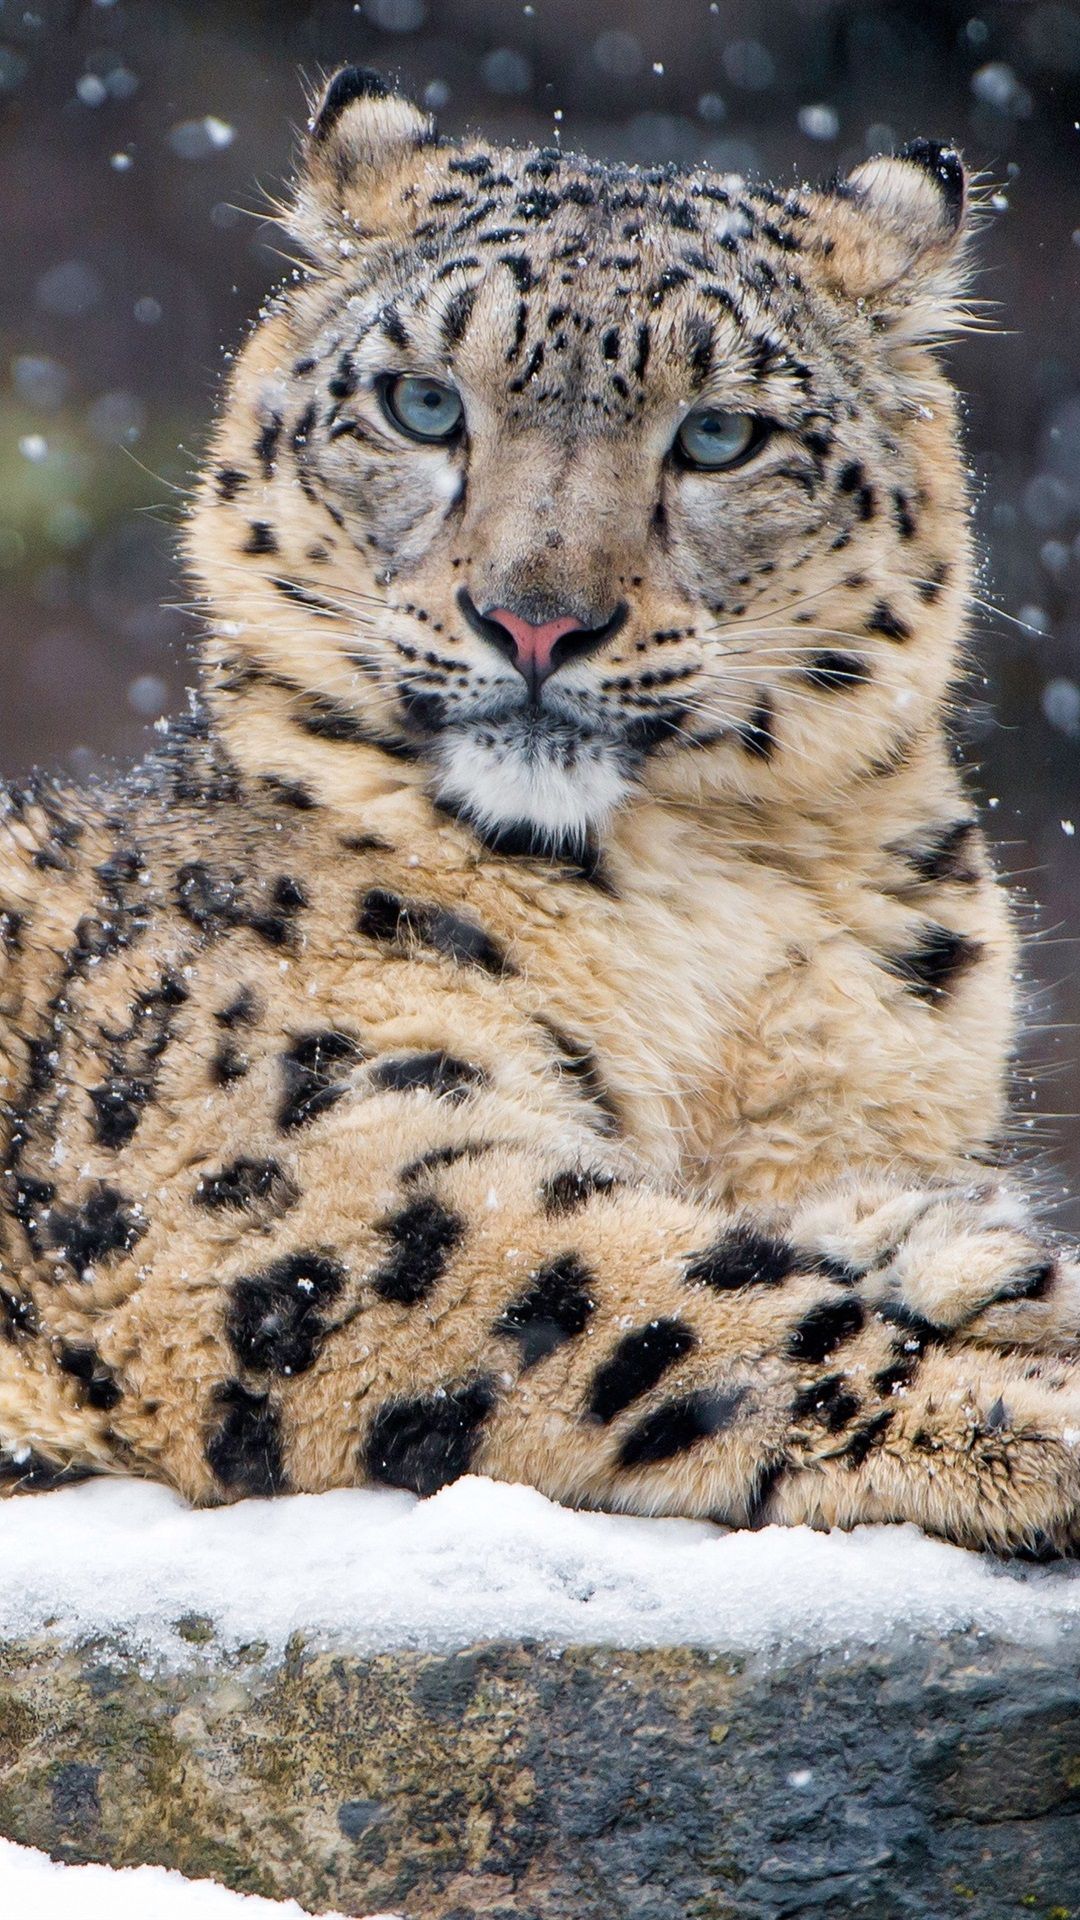  Winter Tiere Hintergrundbild 1080x1920. Leopard Im Winter, Schnee, Wild Lebende Tiere 1080x1920 IPhone 8 7 6 6S Plus Hintergrundbilder, HD, Bild